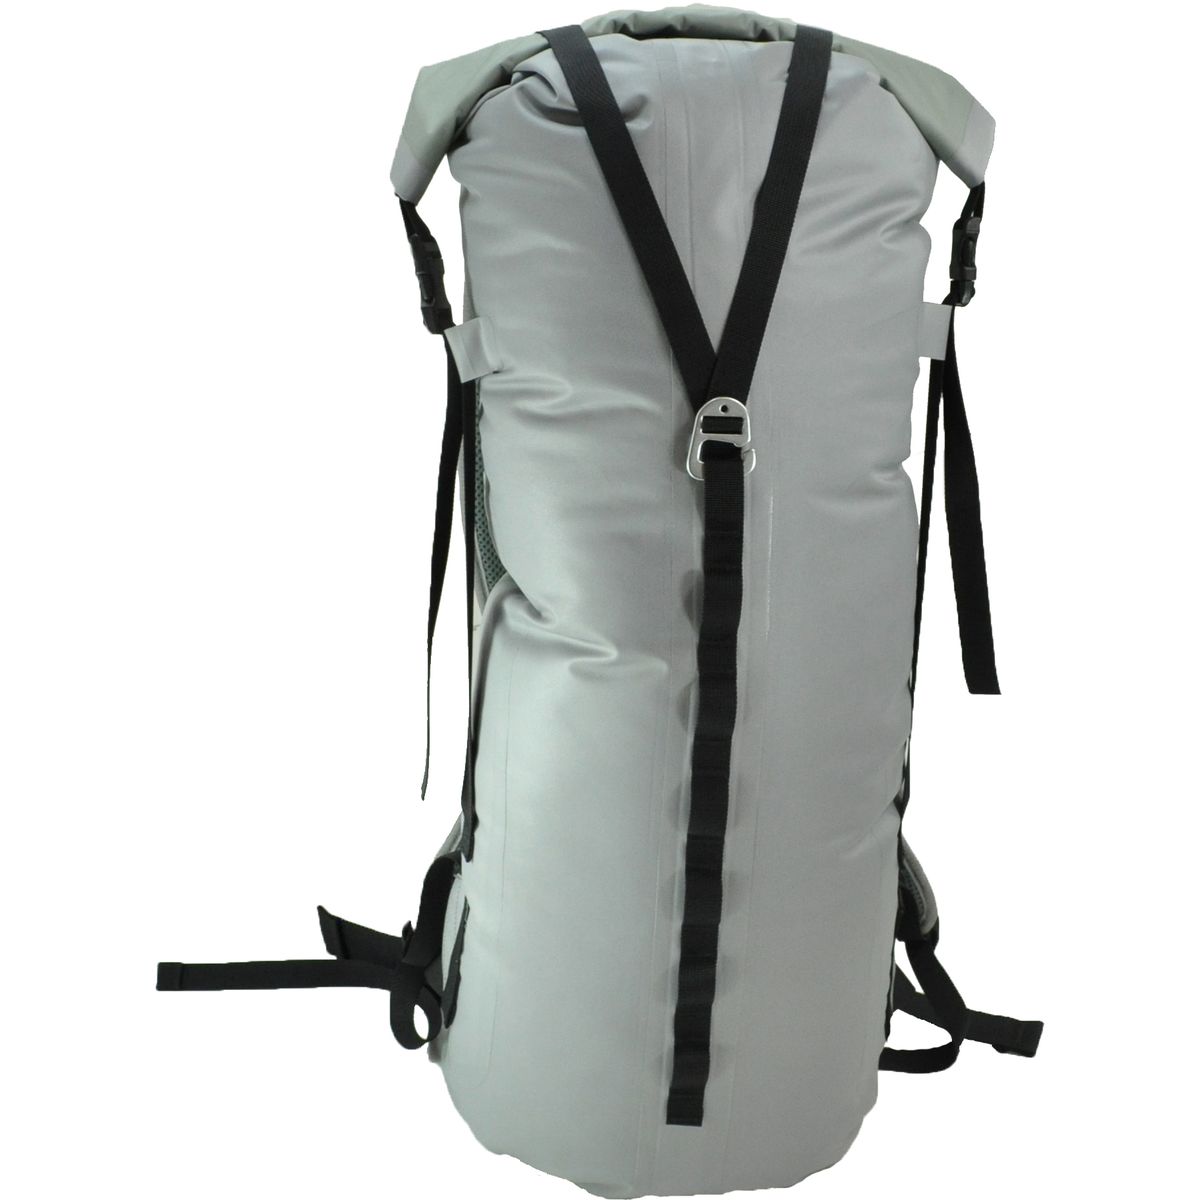 Klymit Splash 25 Backpack - 1525cu in